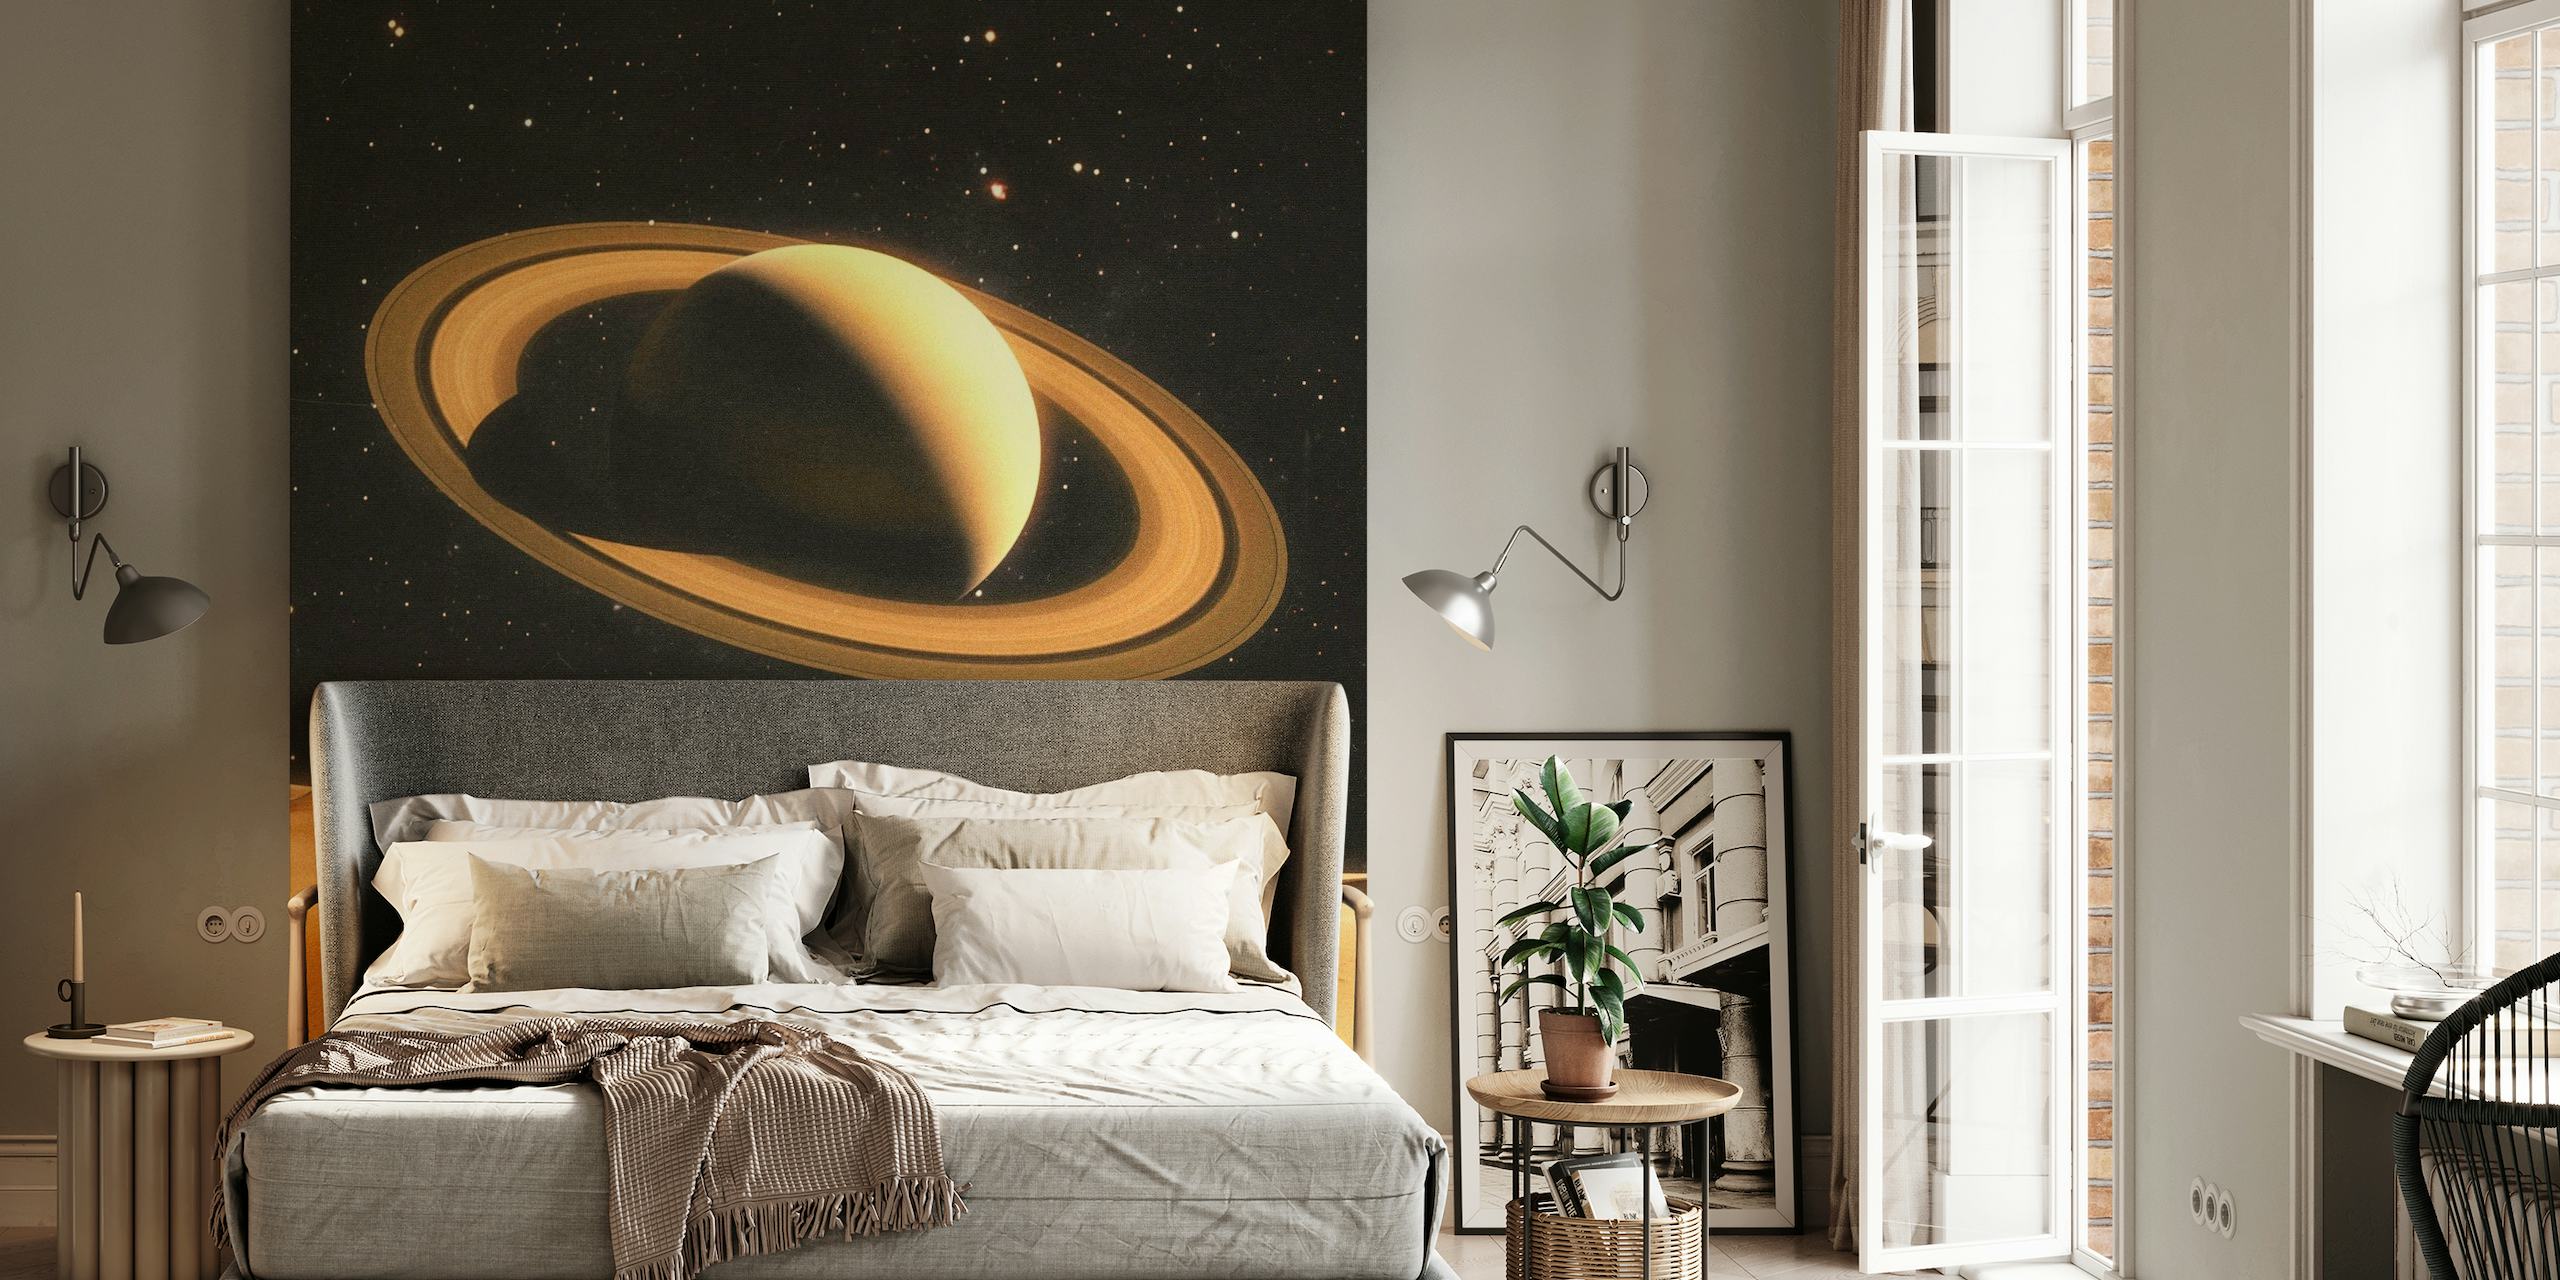 Veggmaleri av to personer på en ørkenlignende planet med Saturn i bakgrunnen